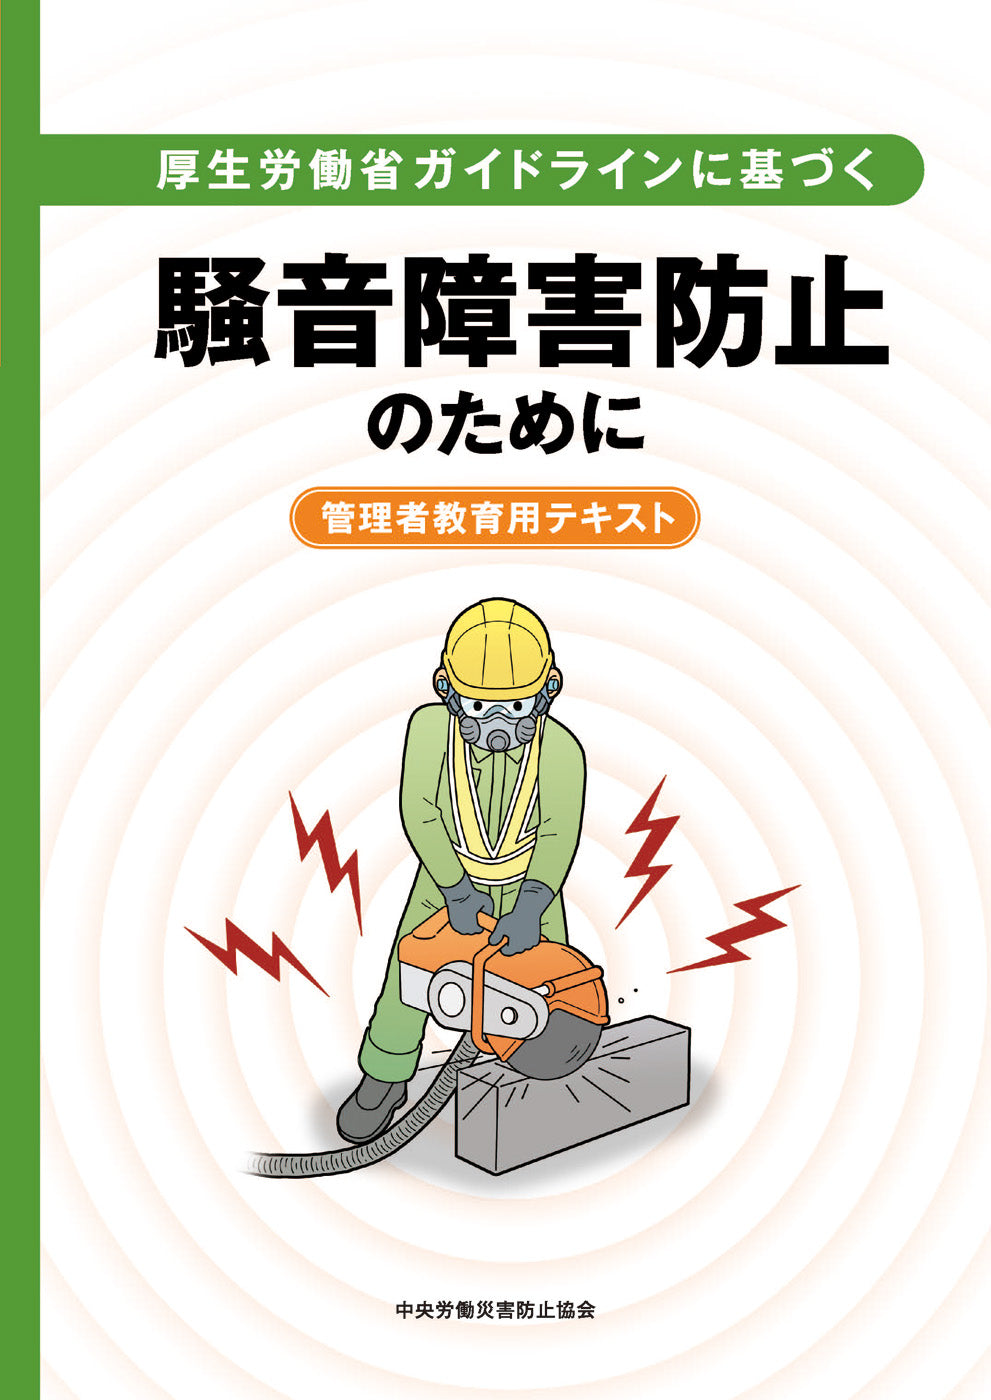 厚生労働省ガイドラインに基づく騒音障害防止のために – 中災防図書用品販売サイト